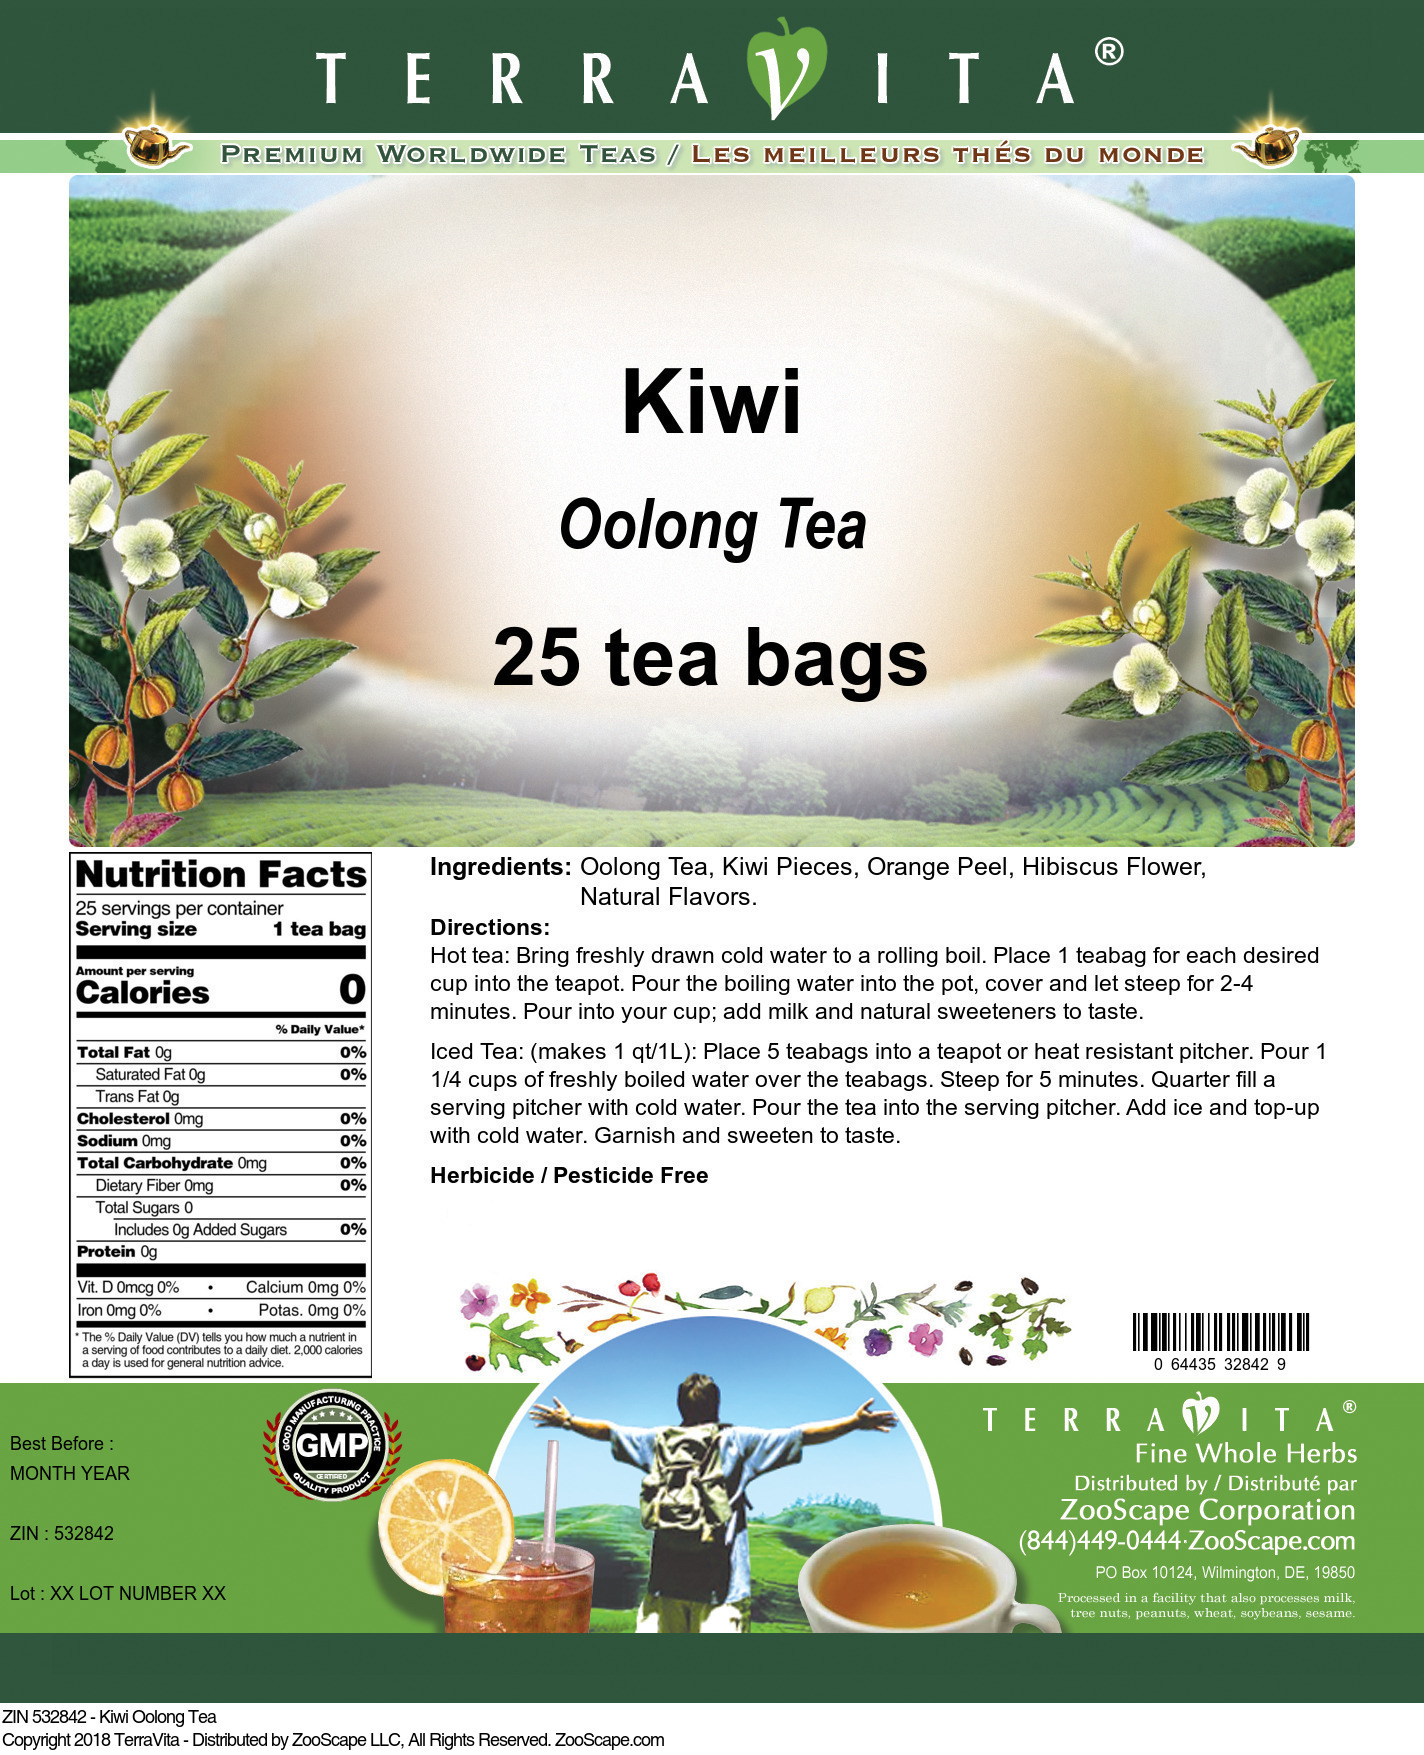 Kiwi Oolong Tea - Label